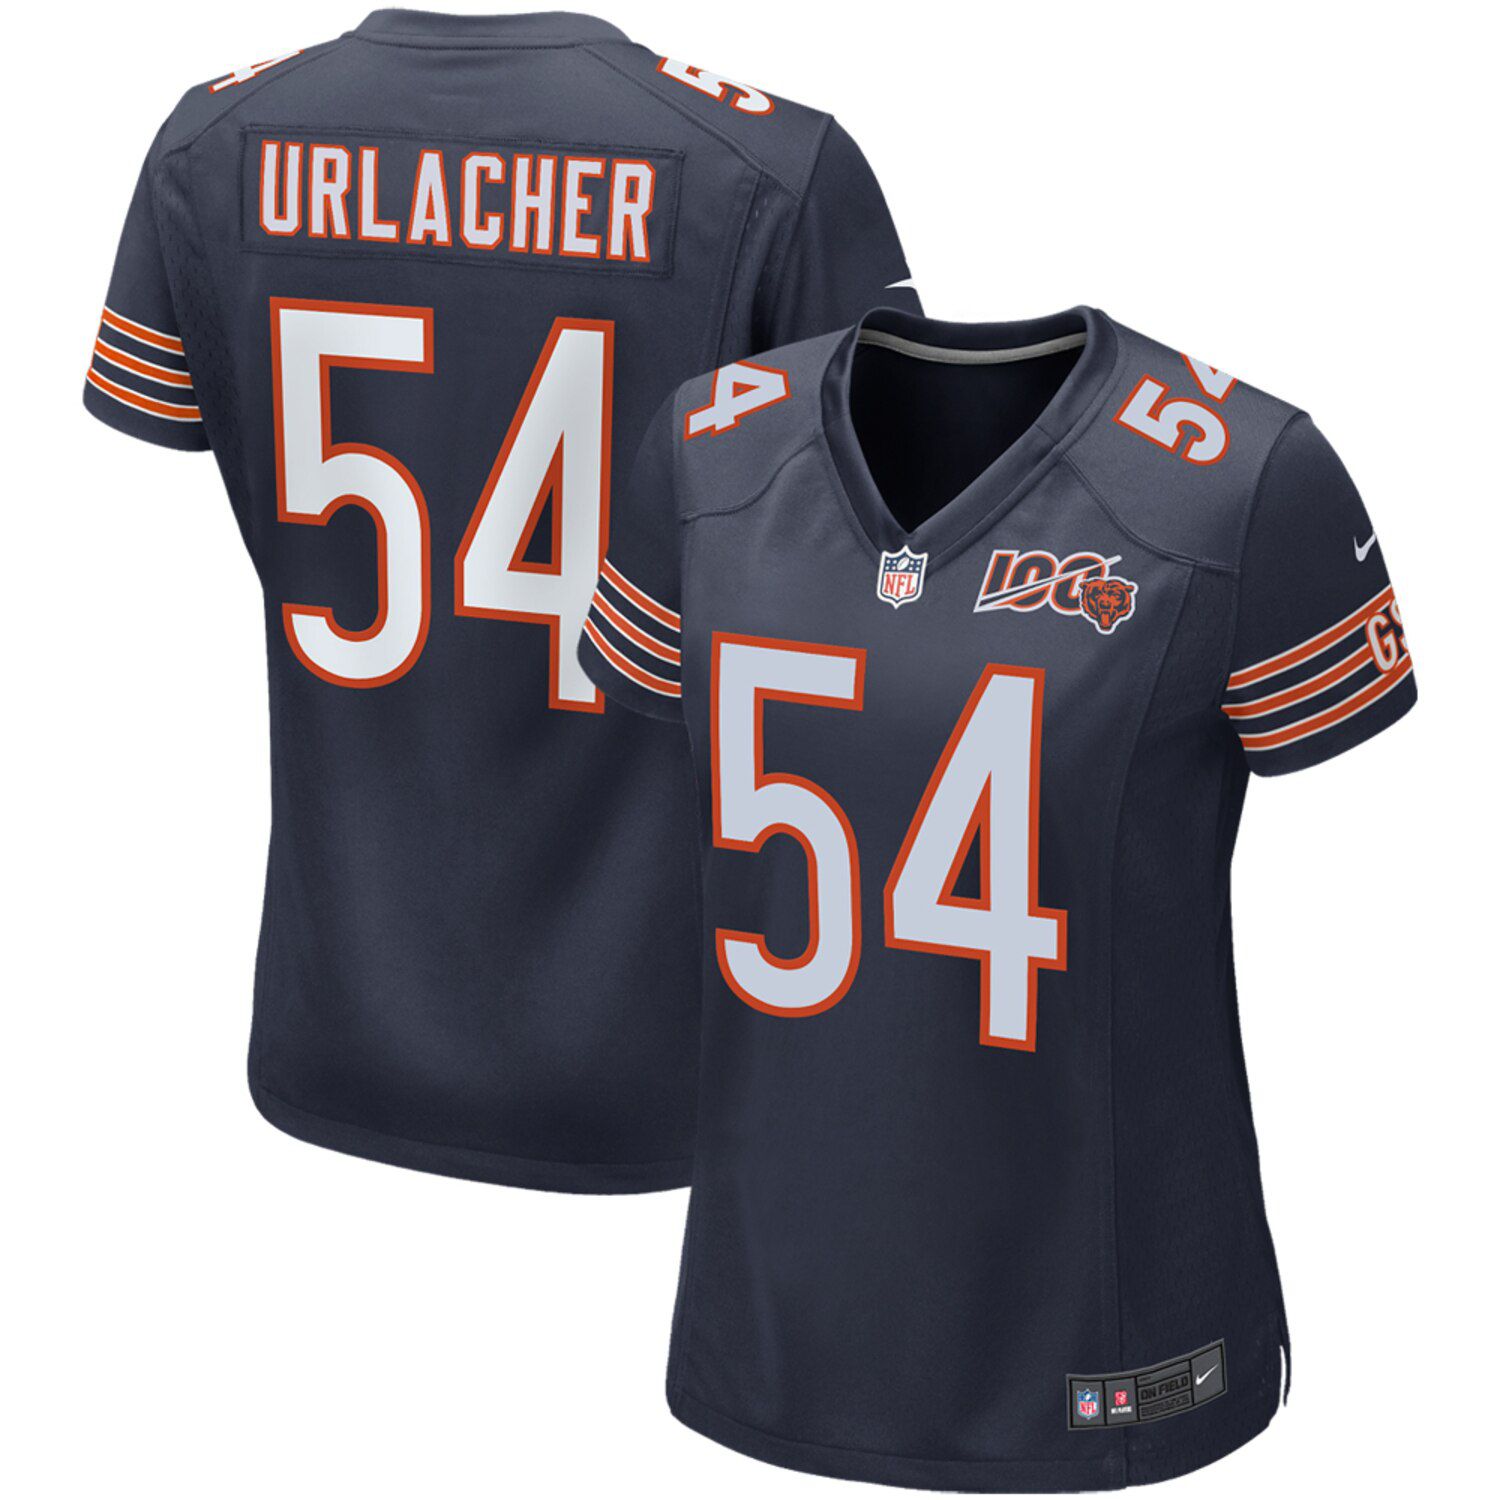 bears urlacher jersey